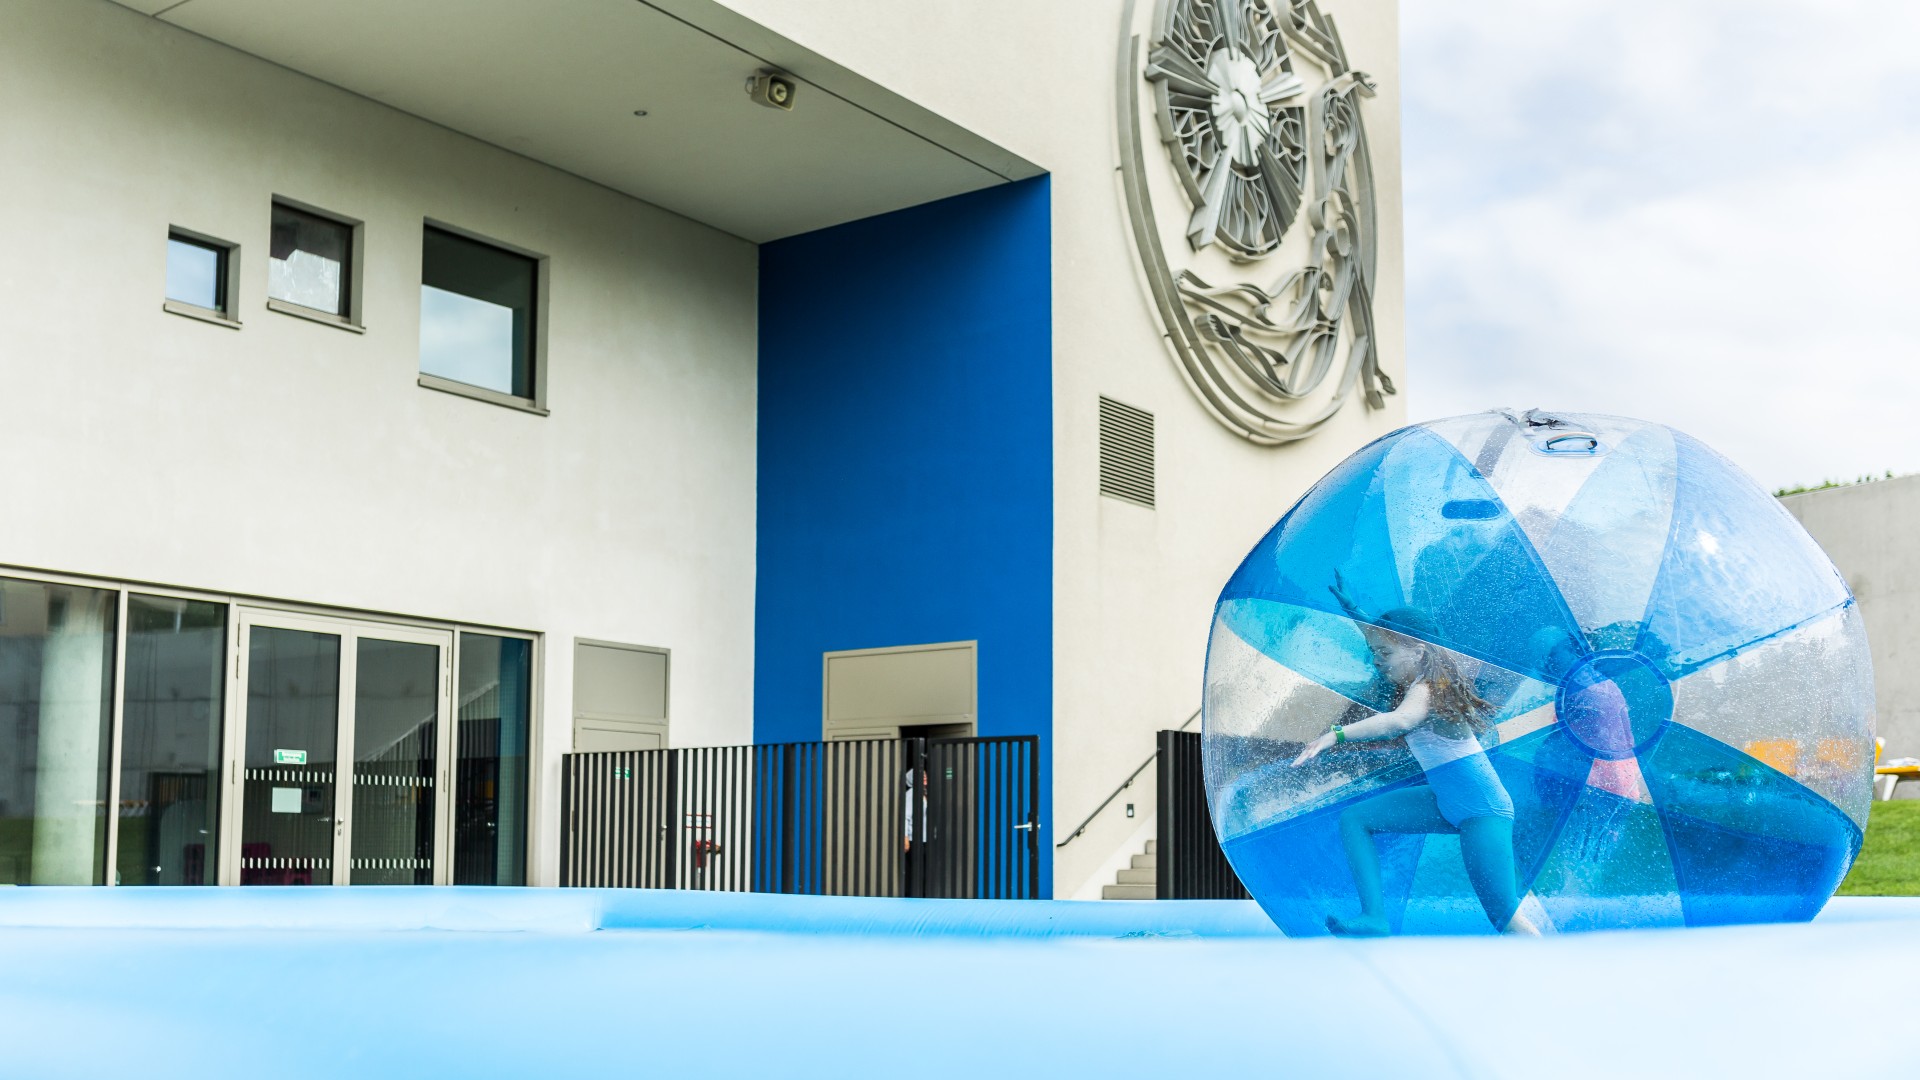 Kleines Mädchen im Zorbingball auf dem Wasser neben dem blu auf der Spielewiese, © SekundenstillFotgrafie